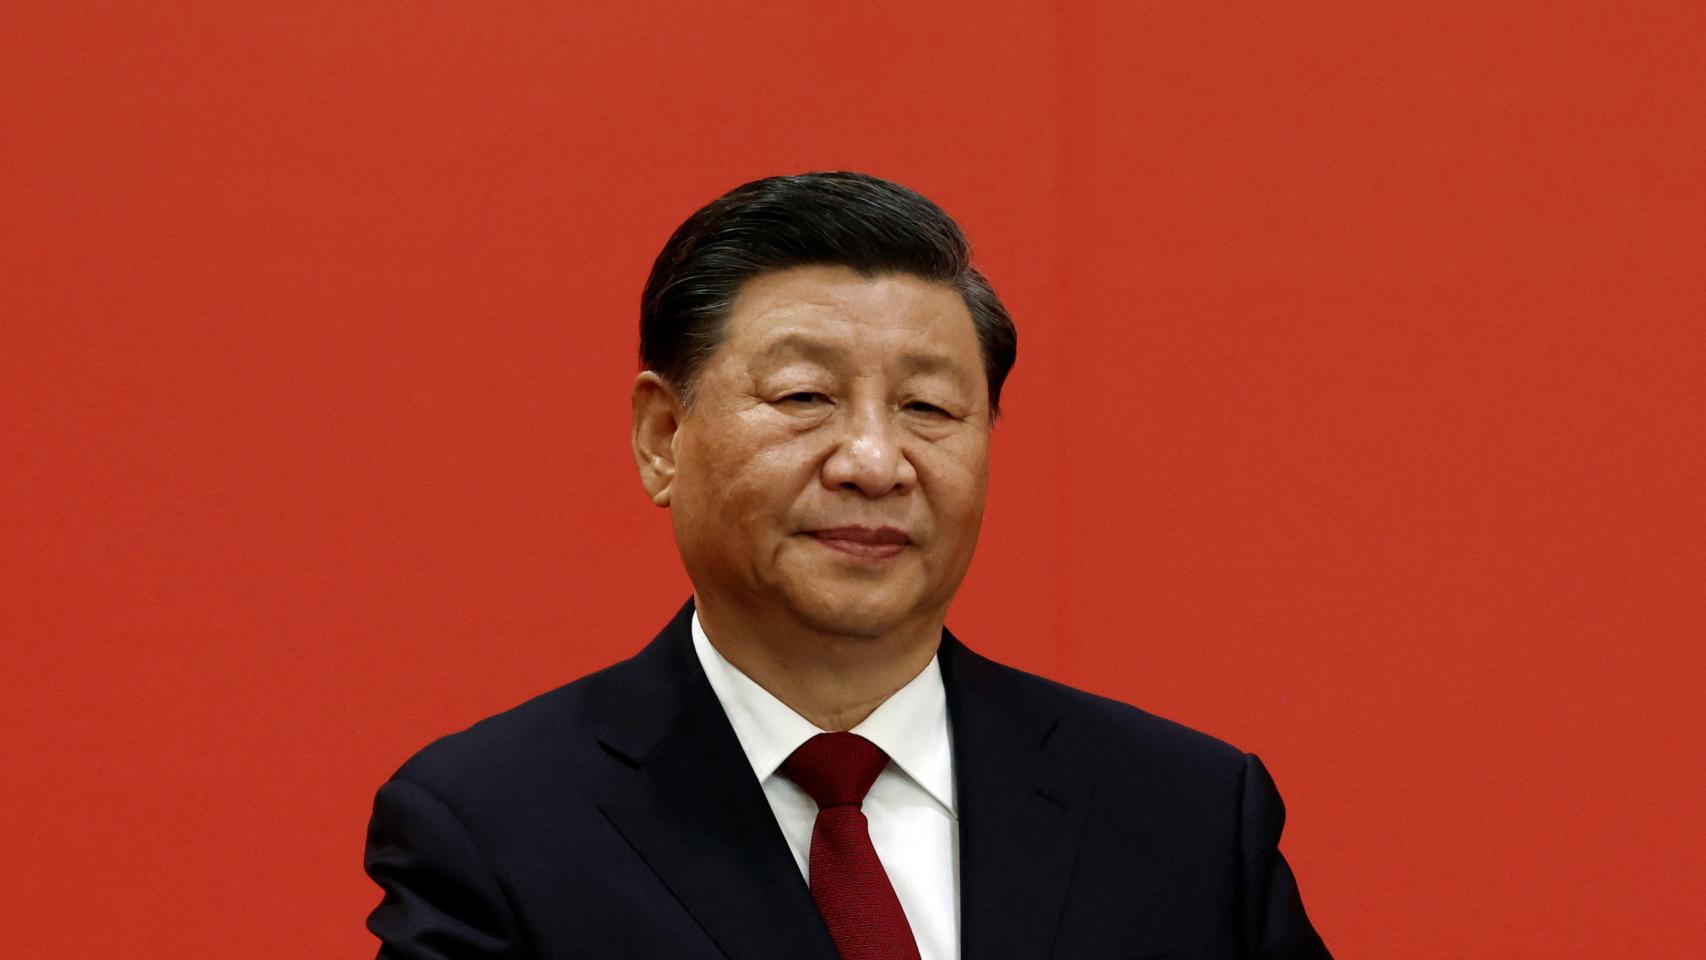 Xi Jinping, el emperador sin emperatrices el techo de cristal de la mujer en la alta esfera política china Foto